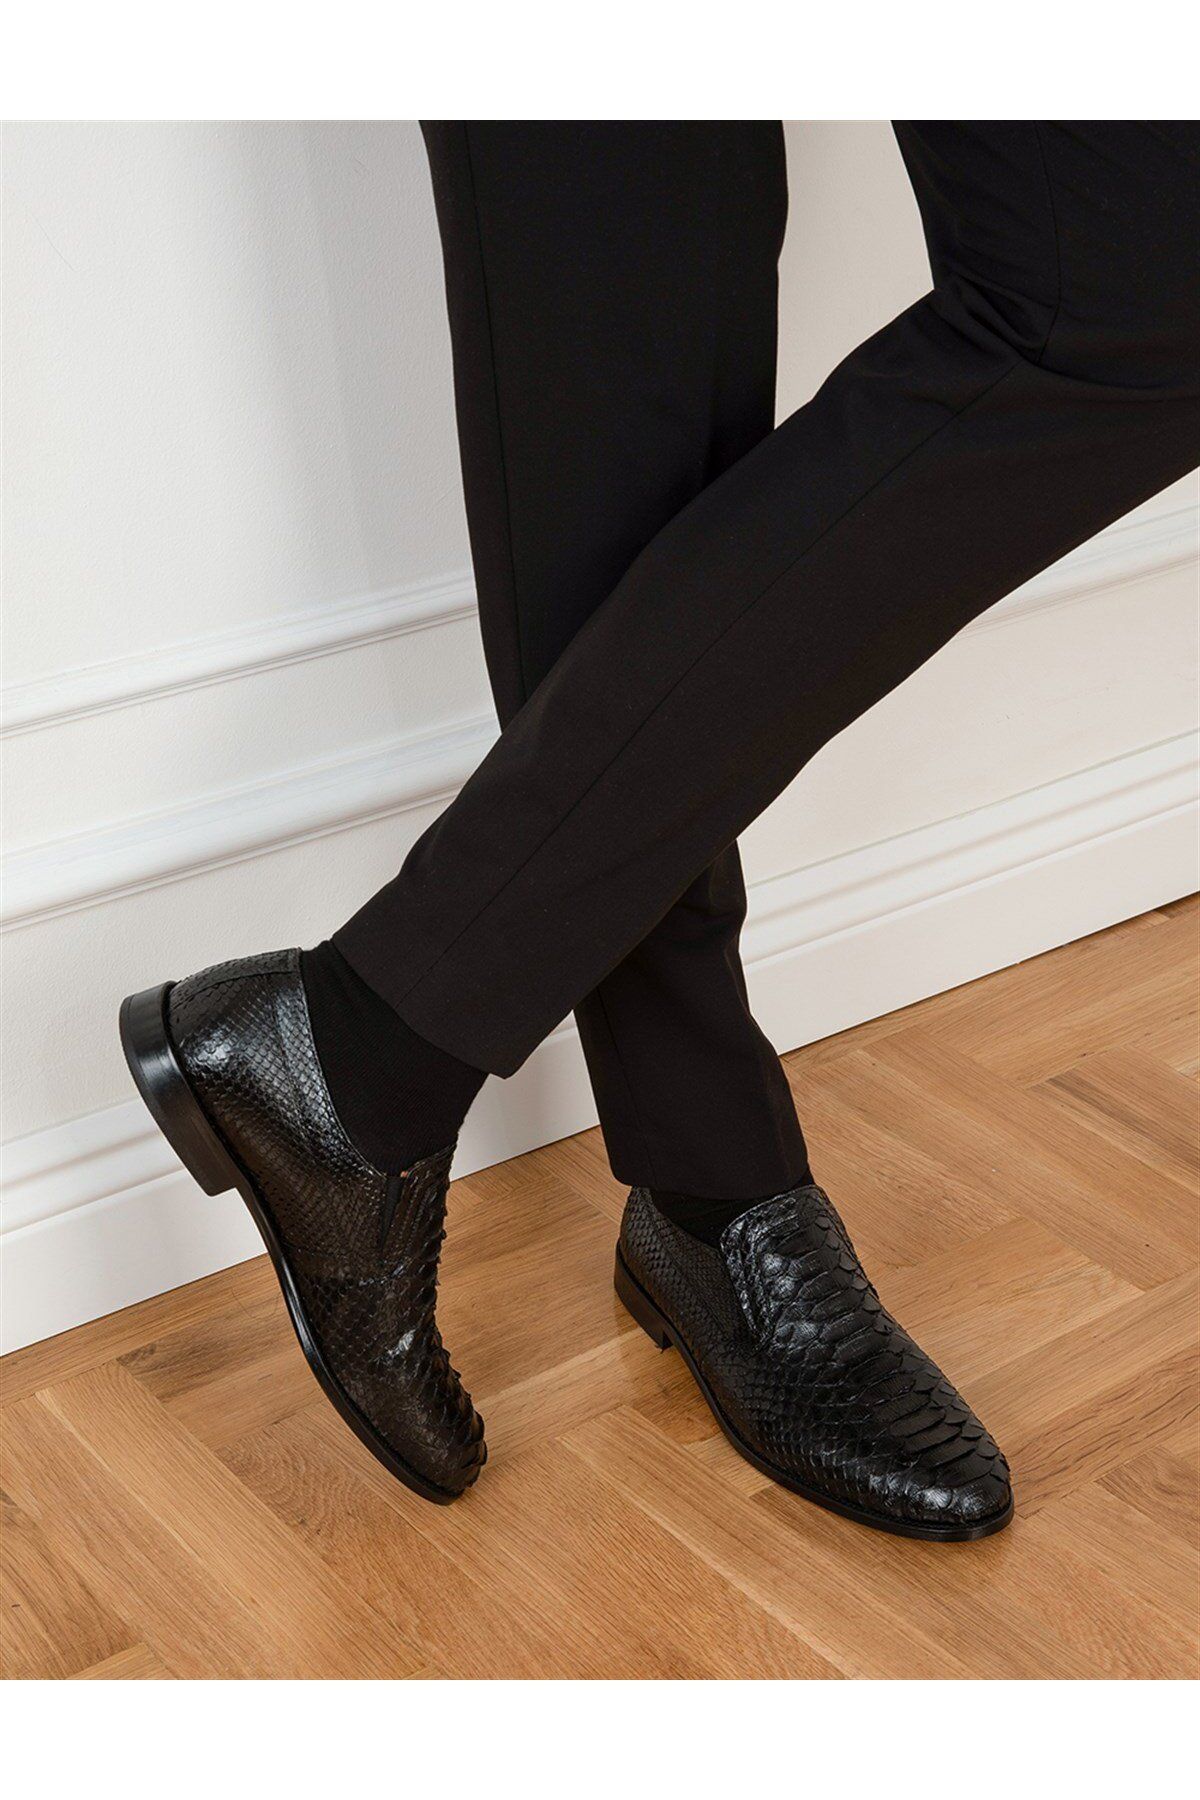 İlvi Tulipa Hakiki Yılan Deri Erkek Siyah Klasik Ayakkabı